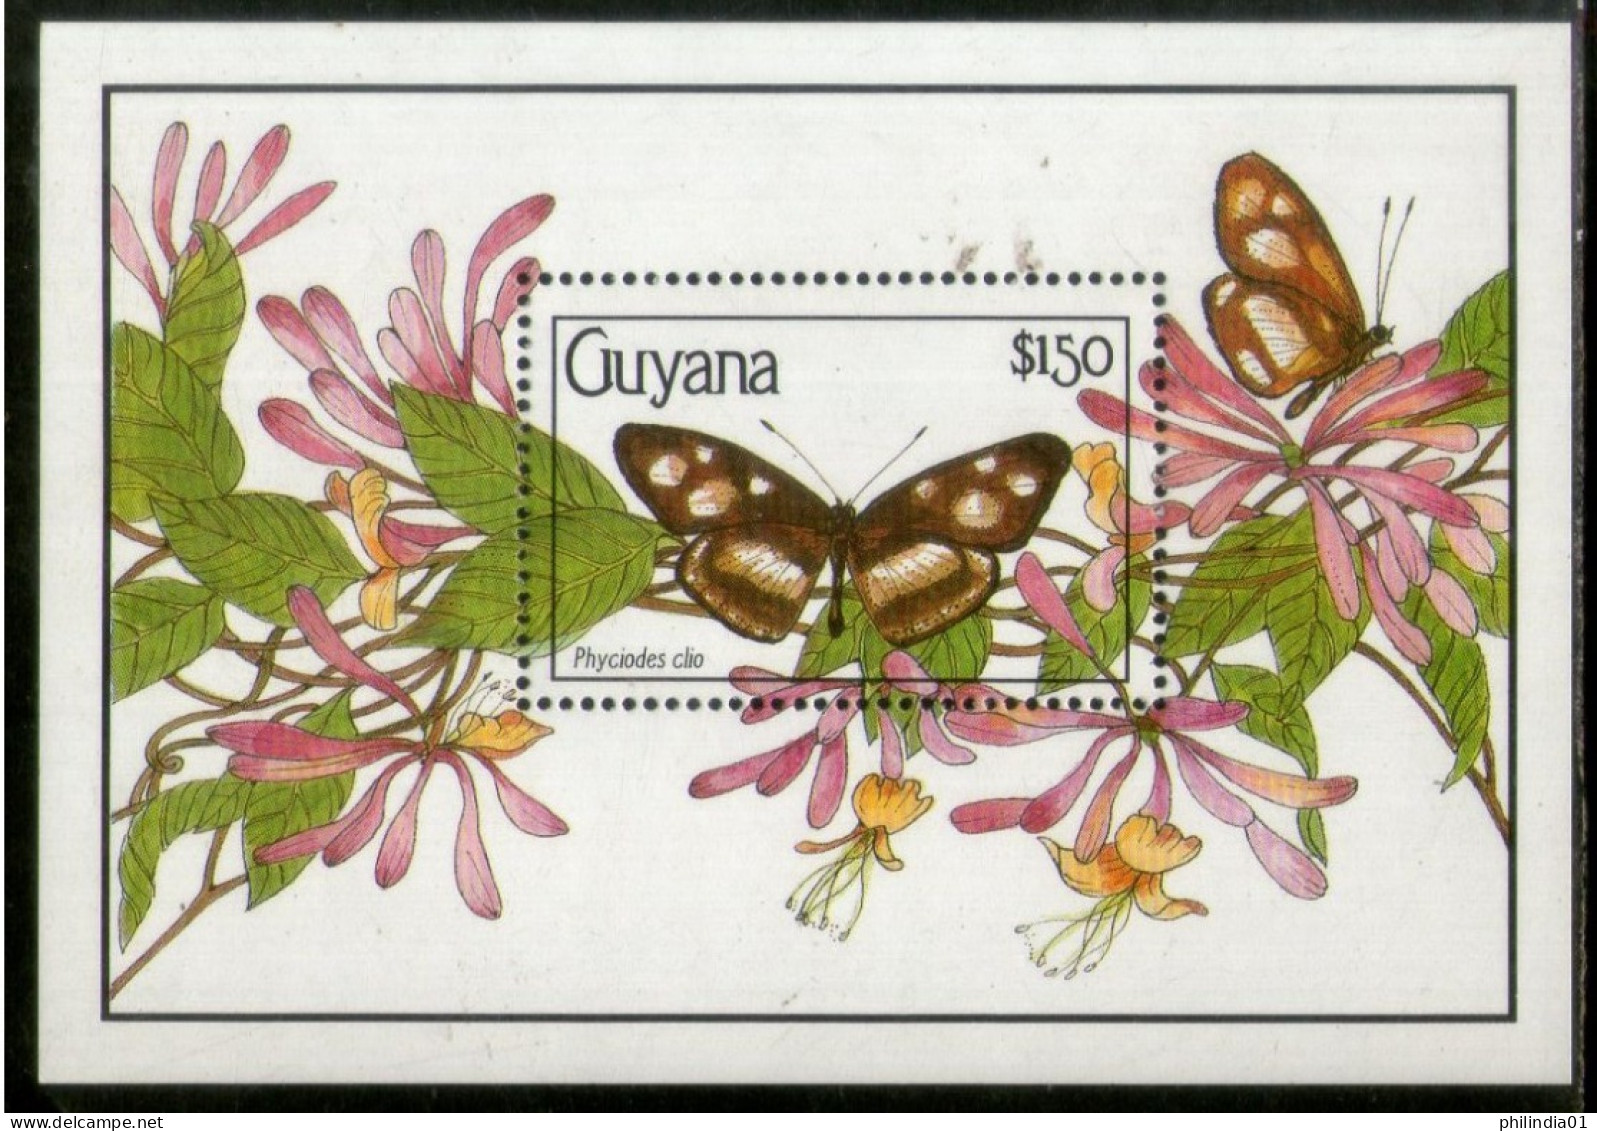 Guyana 1990 Butterflies Moth Insect Sc 2345 M/s MNH # 1860 - Schmetterlinge